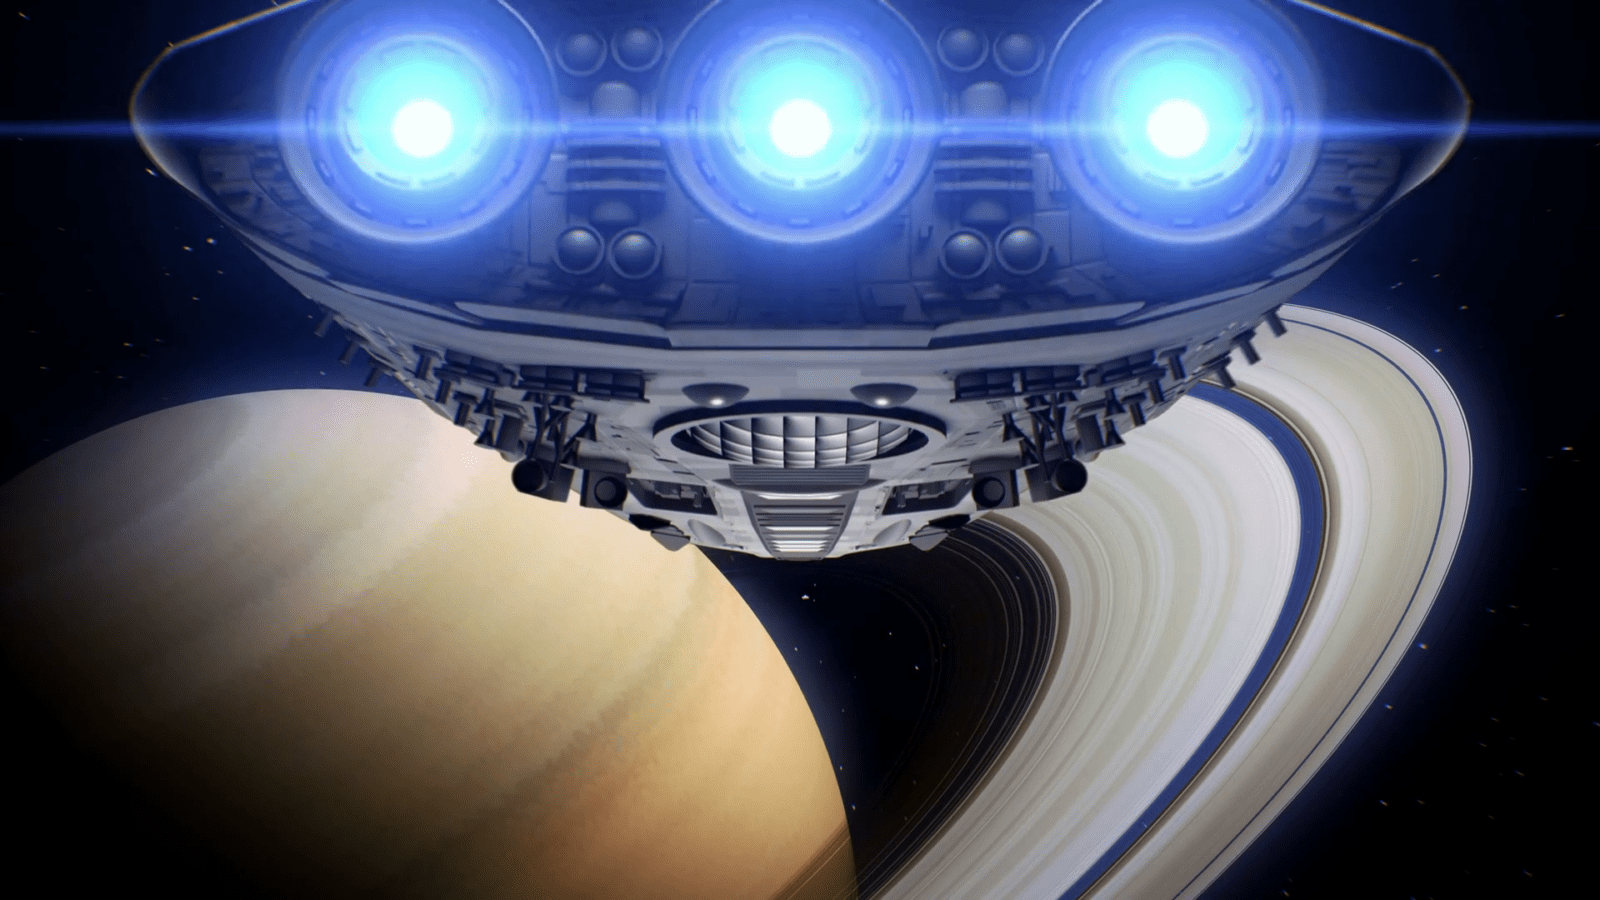 Proyecto Camelot: ¿Una gigantesca nave extraterrestre en los anillos de Saturno?